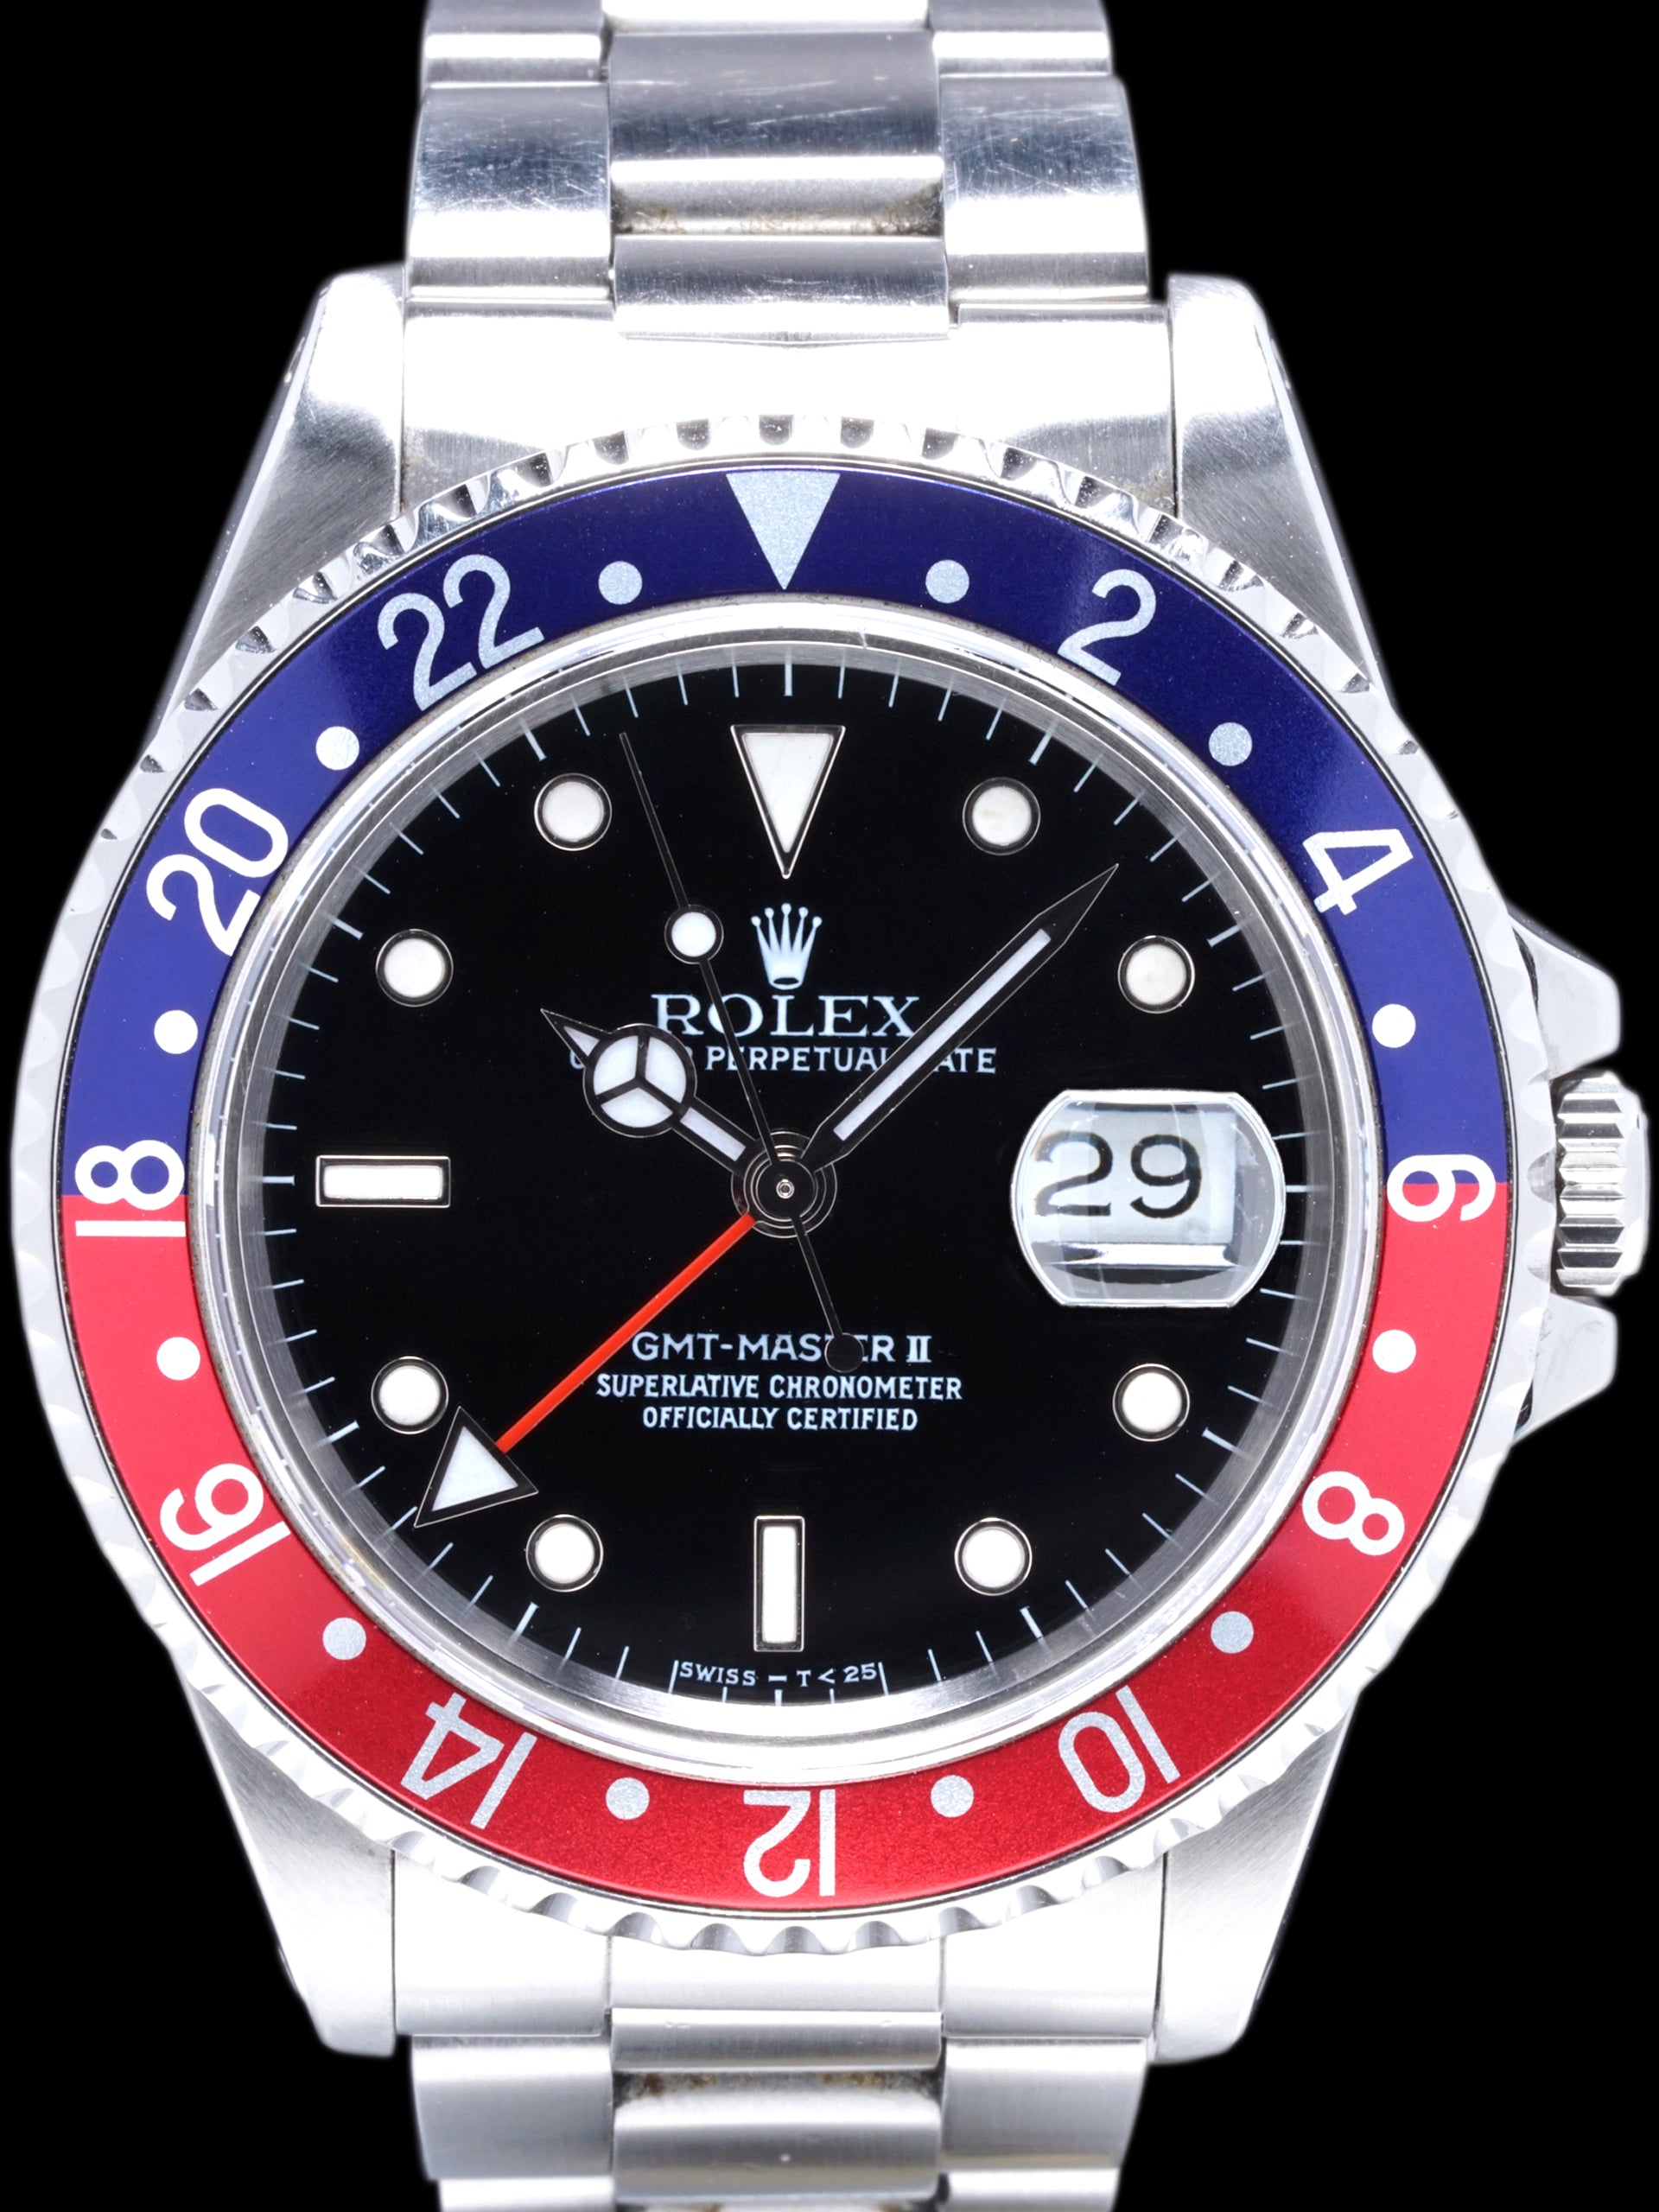 1989 Rolex GMT-Master II (Ref. 16710) "Pepsi"